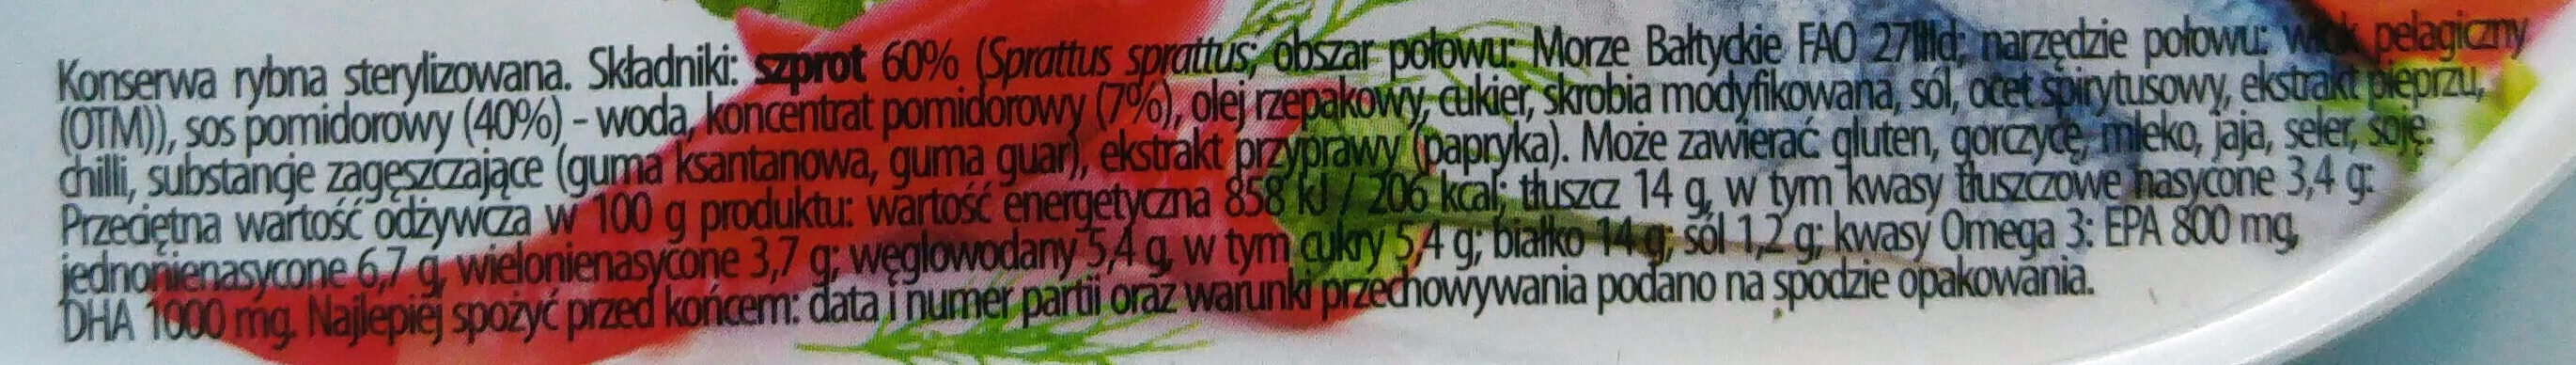 Szprot w pikantnym sosie pomidorowym. - Ingredients - pl